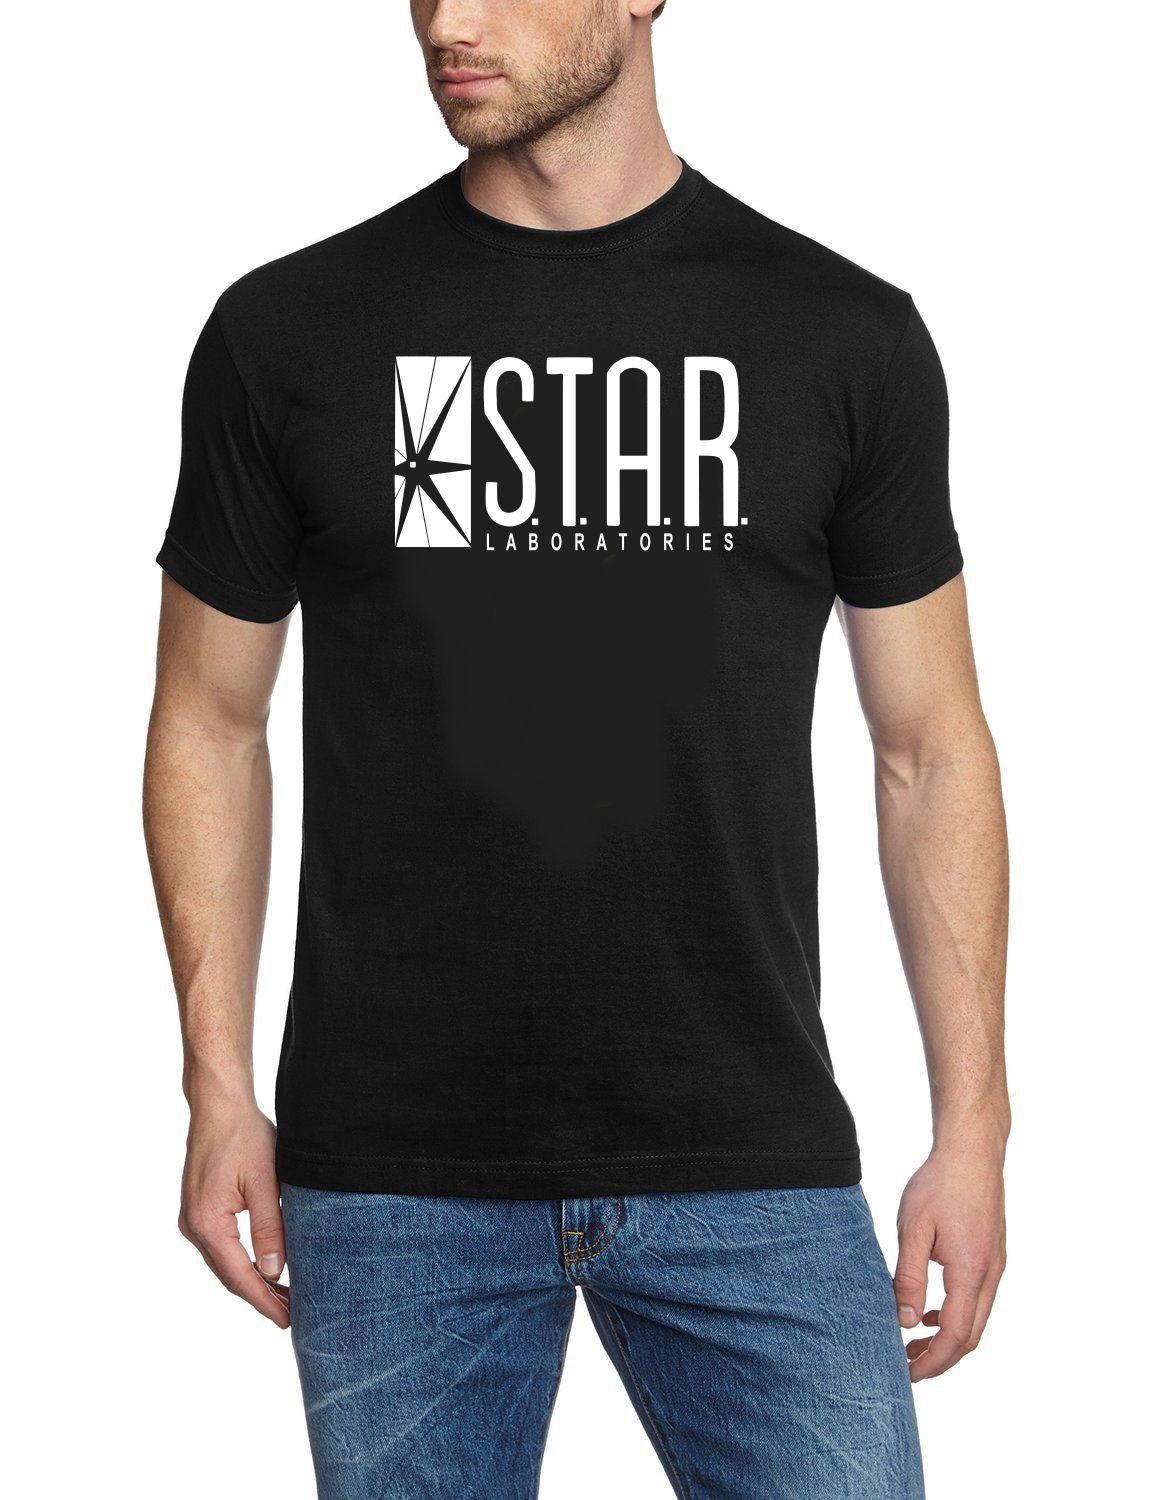 Erwachsene Print-Shirt M XXL L Flash Jugendliche Schwarz LABORATORIES T-Shirt S Gr. TV Flash STAR XL + The